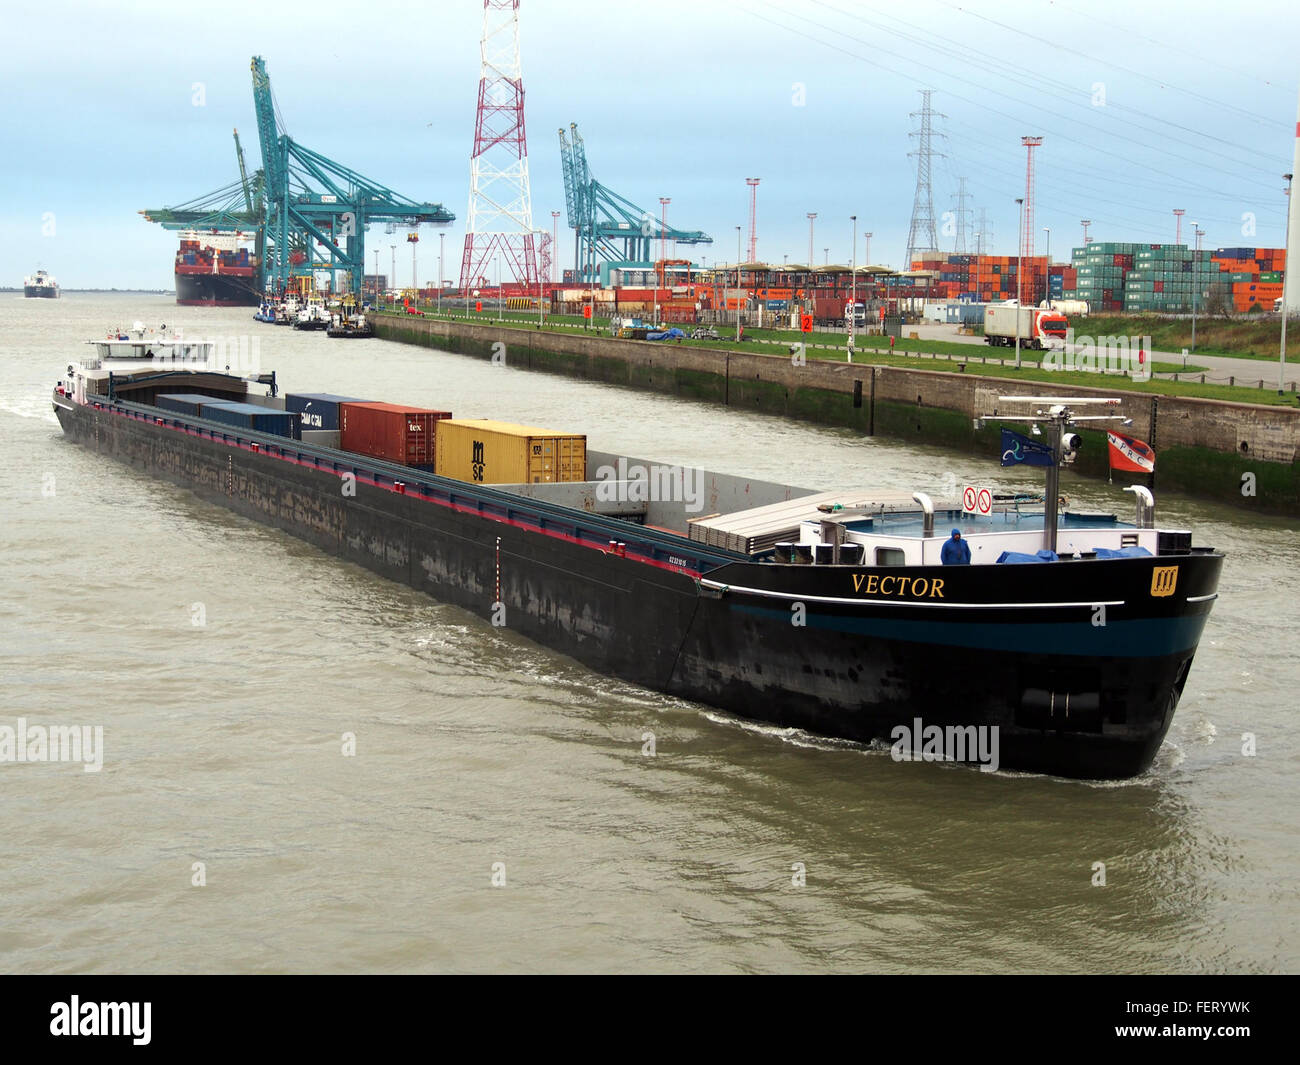 Vektor (Schiff, 2008), ENI 02331015 Hafen von Antwerpen pic1 Stockfoto